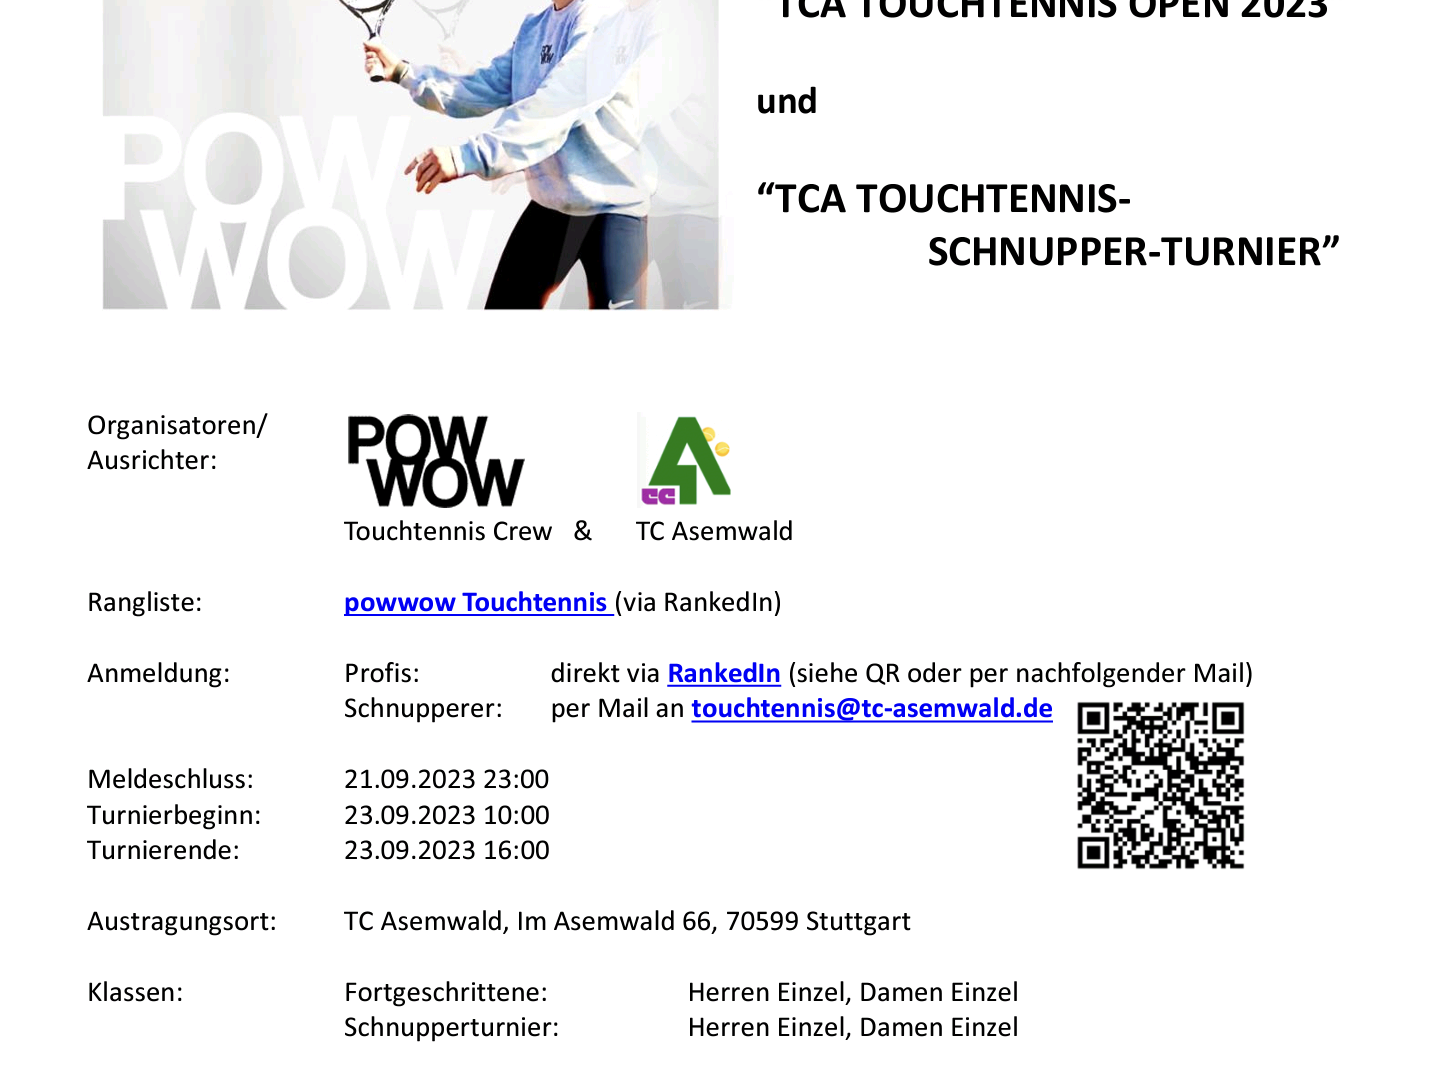 Touchtennis Open 2023 - Infos & Anmeldung